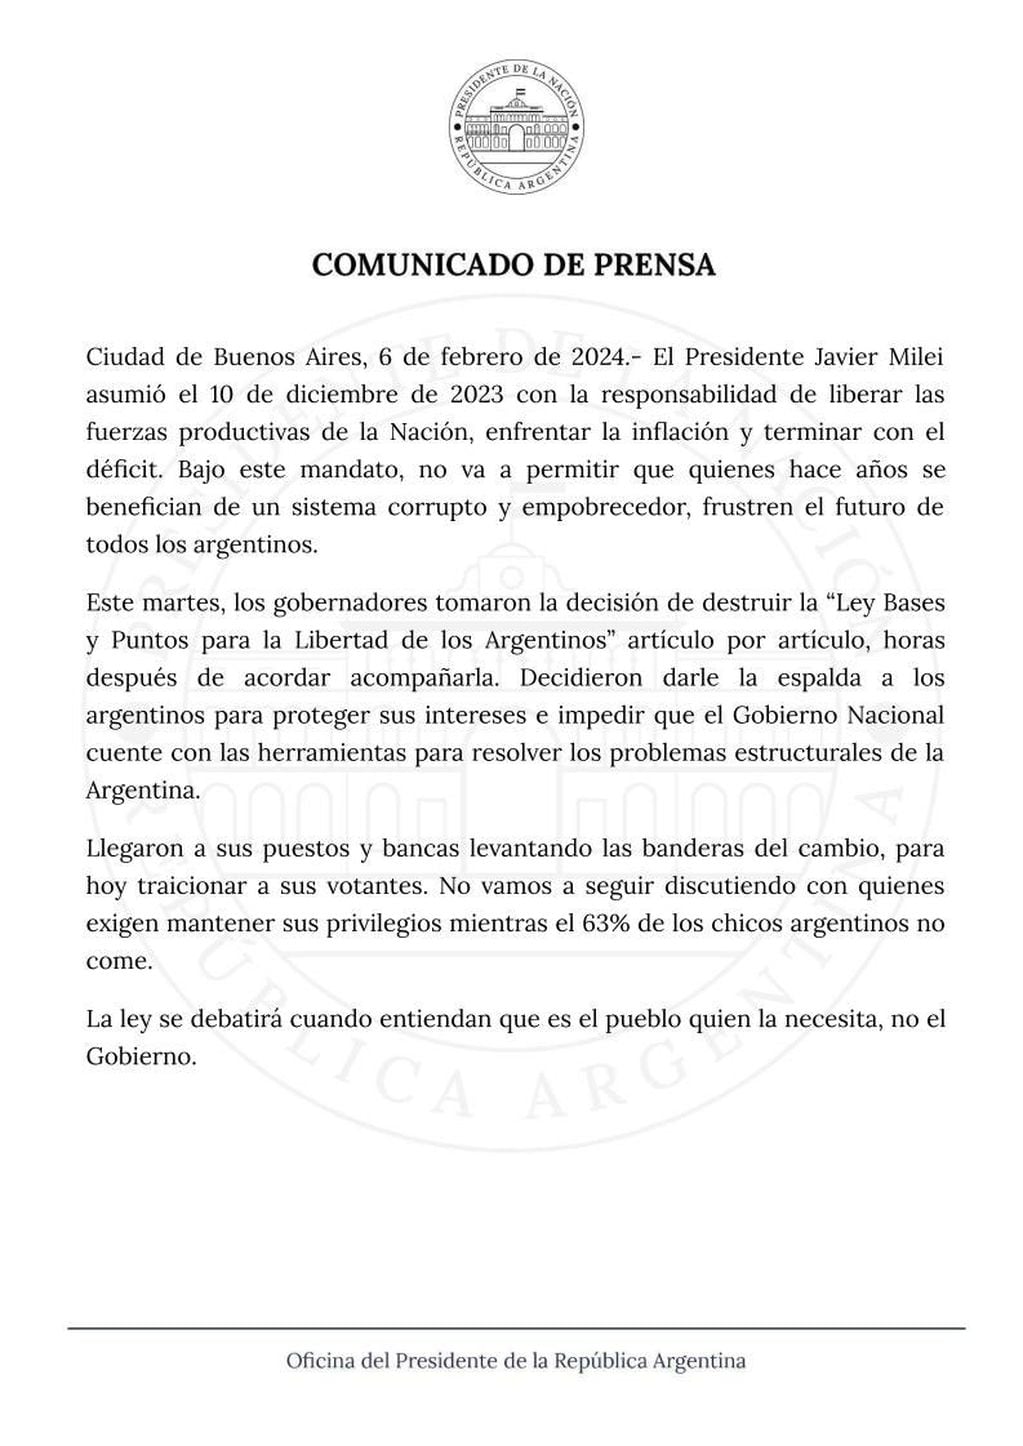 Duros comunicados desde el oficialismo tras el revés parlamentario de la ley ómnibus, incluido un mensaje del presidente Javier Milei.